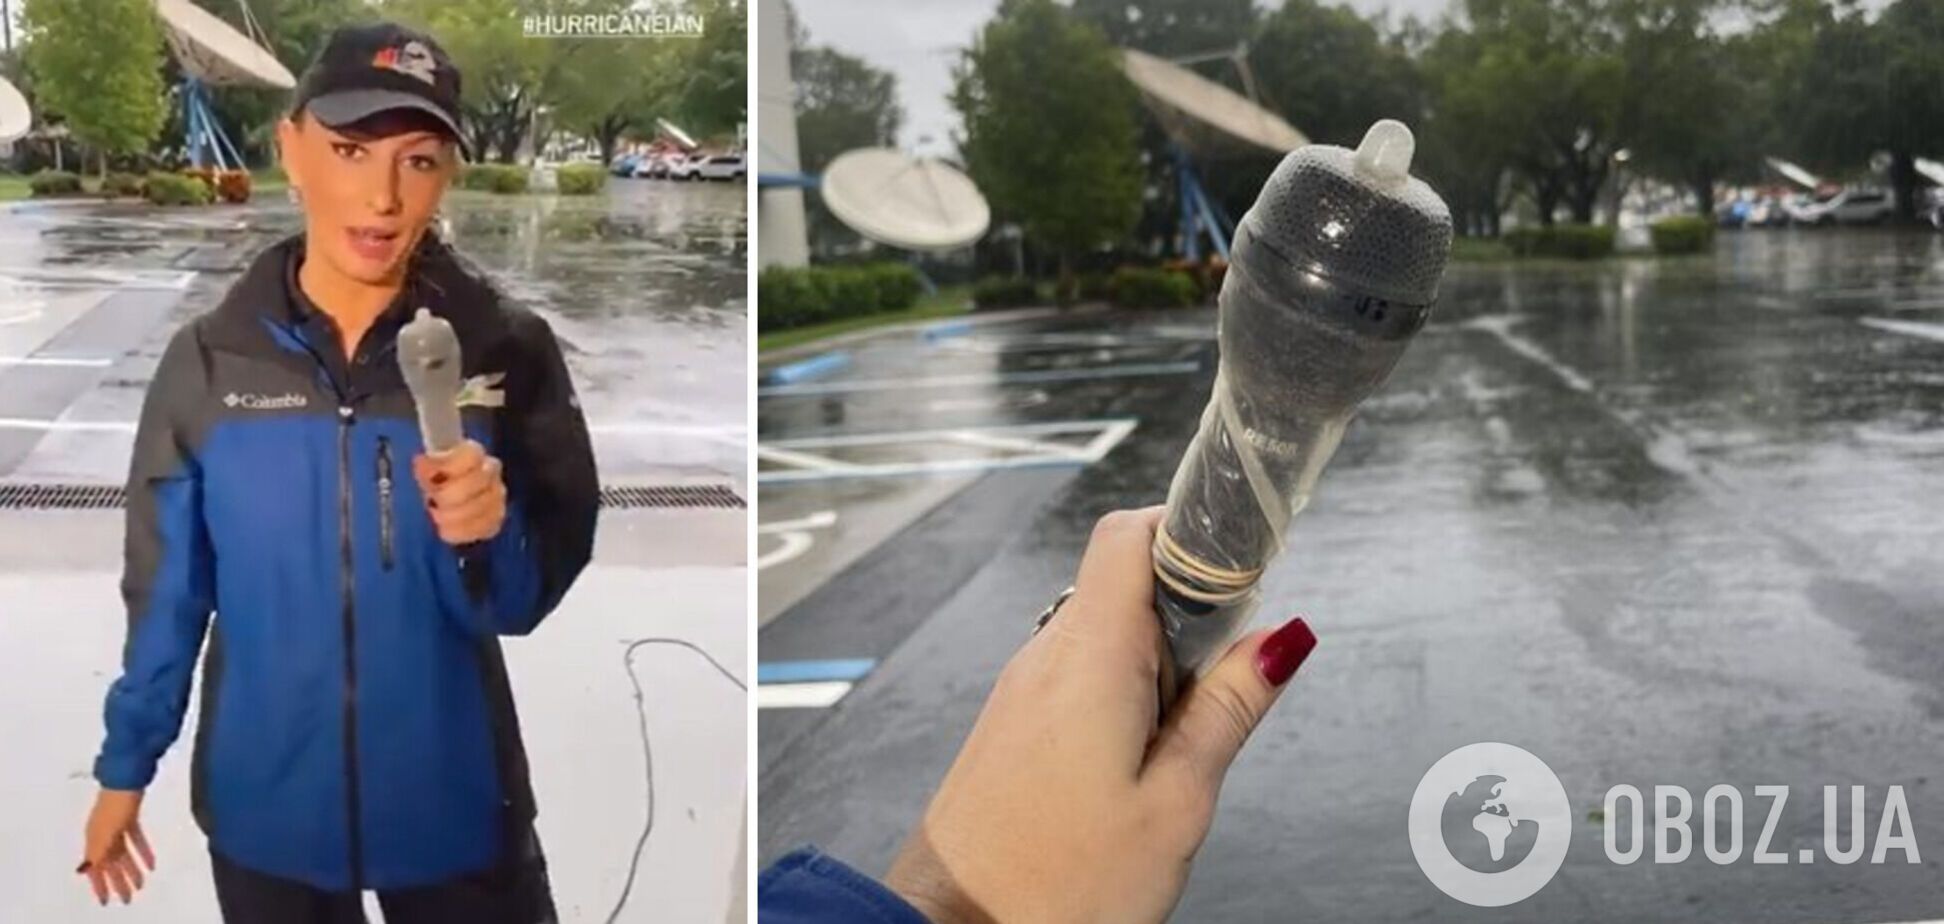 Журналистка из Флориды записывала сюжет во время урагана с презервативом на микрофоне и взорвала сеть